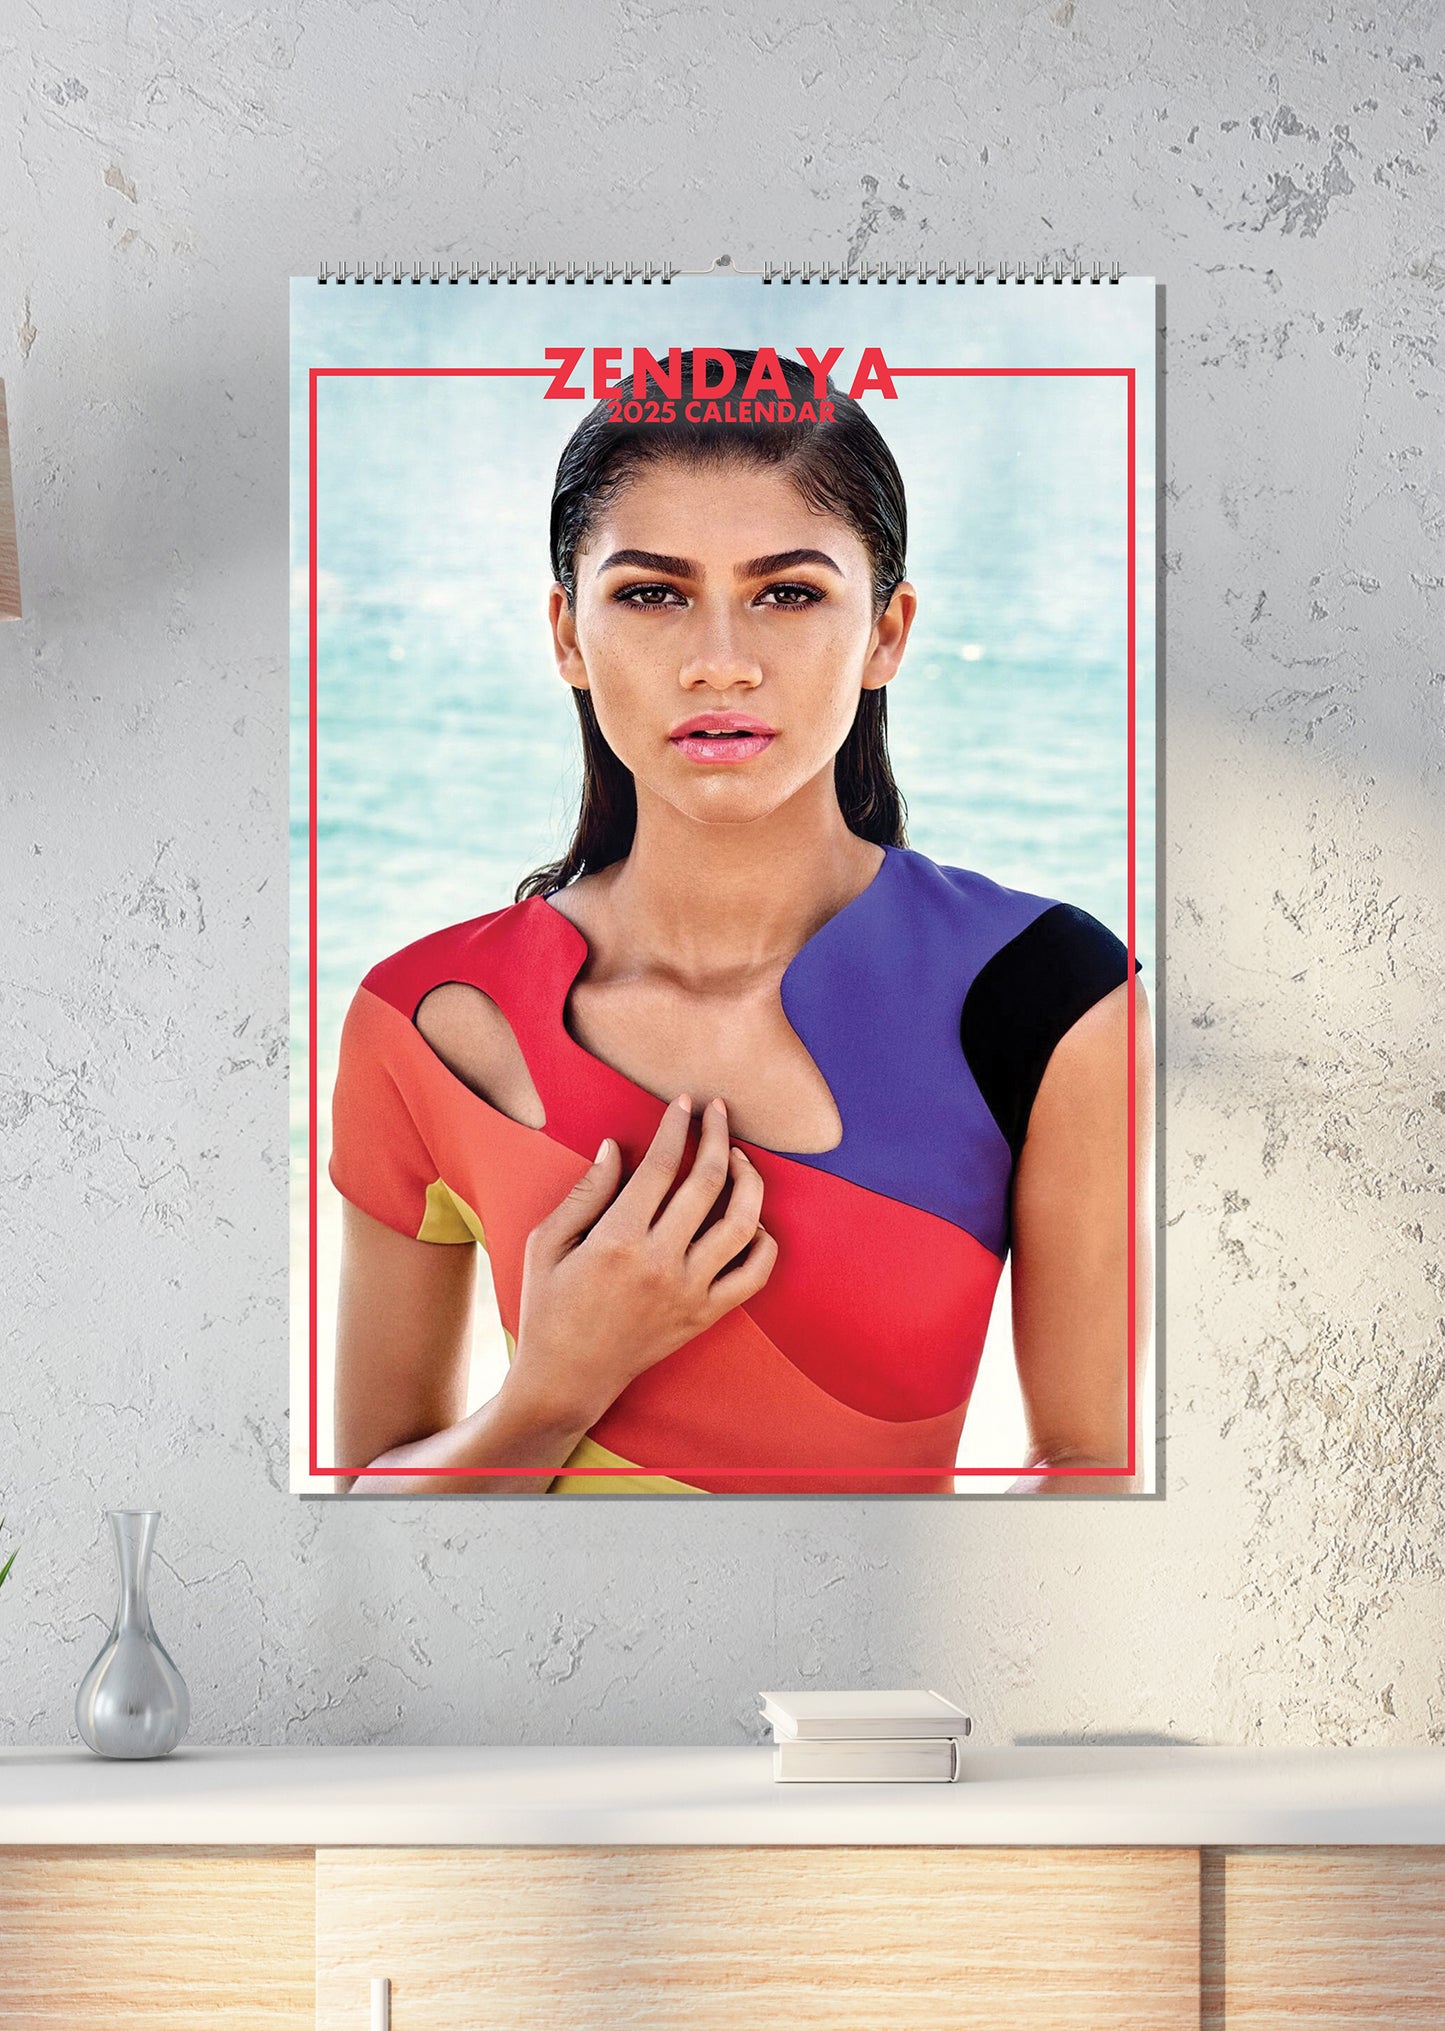 Zendaya Calendar 2025